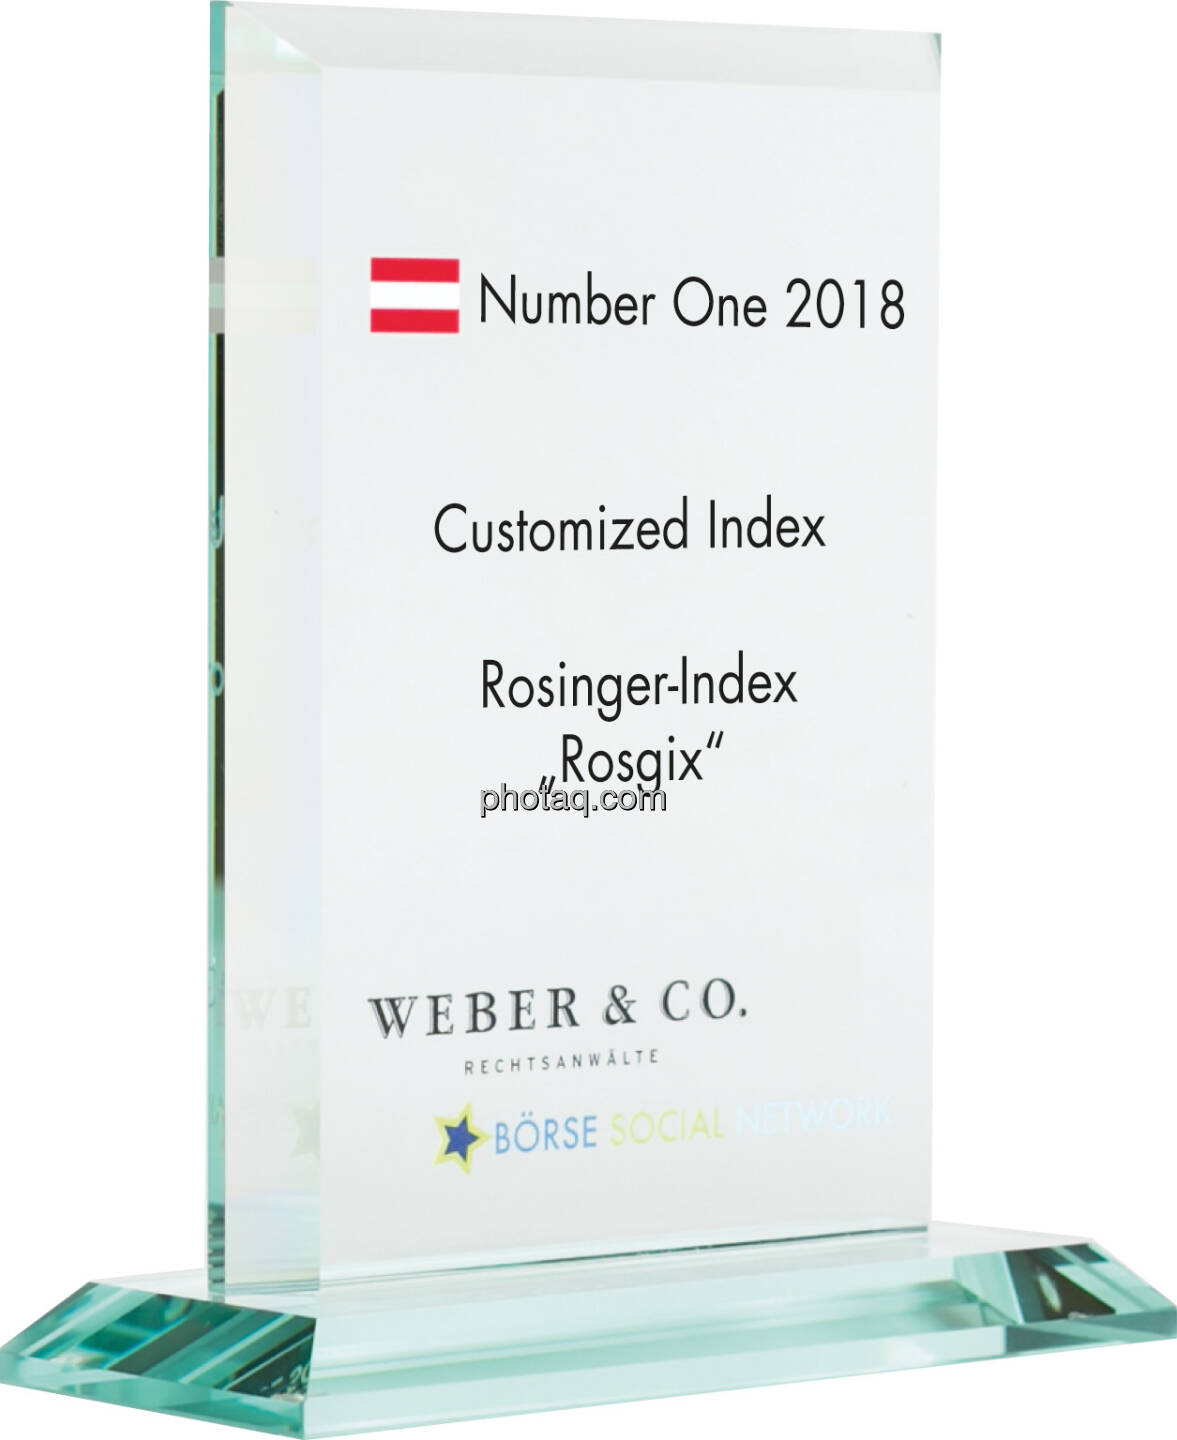 Number One Awards 2018 - Customized Index Rosiner-Index Rosgix